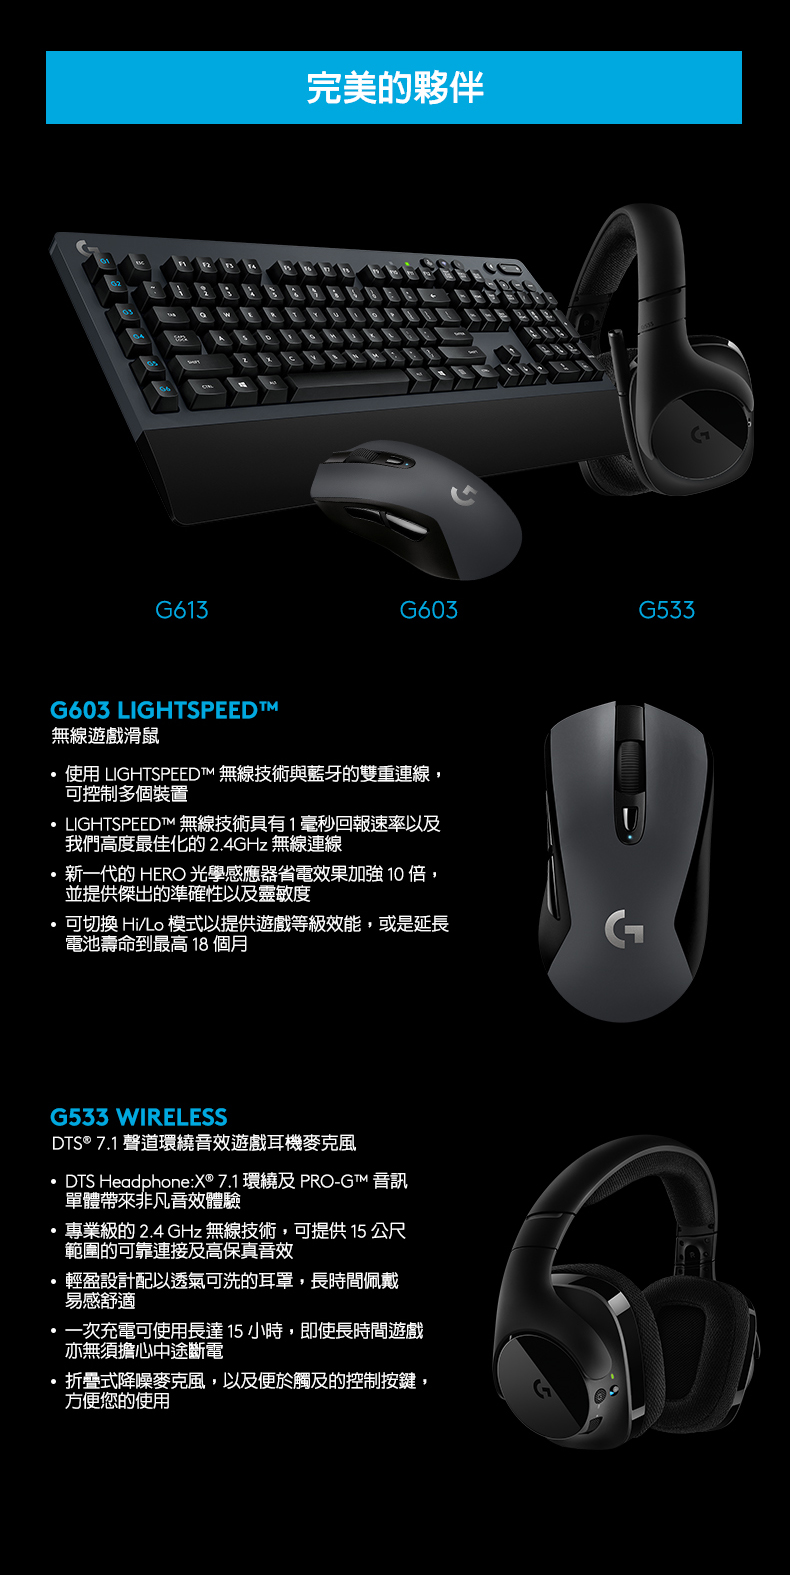 完美的夥伴G613G603G533G603 LIGHTSPEEDT無線滑鼠使用 LIGHTSPEED 無線技術與藍牙的雙重連線可控制多個裝置LIGHTSPEEDT 無線技術具有1毫秒回報速率以及我們高度最佳化的 2.4GHz 無線連線新一代的 HERO 光學感應器省電效果加強10倍並提供傑出的準確性以及靈敏度可切换 模式以提供遊戲效能,或是延長到最高 個月G533 WIRELESSDTS® 7.1 聲道遊戲耳機DTS Headphone:X®7.1 環繞及PRO-GT™ 單體帶來非凡音效體驗專業的 2.4 GHz 無線技術,可提供 15 公尺範圍的可靠連接及高保真音效輕盈設計配以透氣可洗的耳罩,長時間佩戴一次充電可使用長達15 小時,即使長時間遊戲亦無須擔心斷電折疊式降麥克風,以及便於觸及的控制按鍵,方便的使用GG